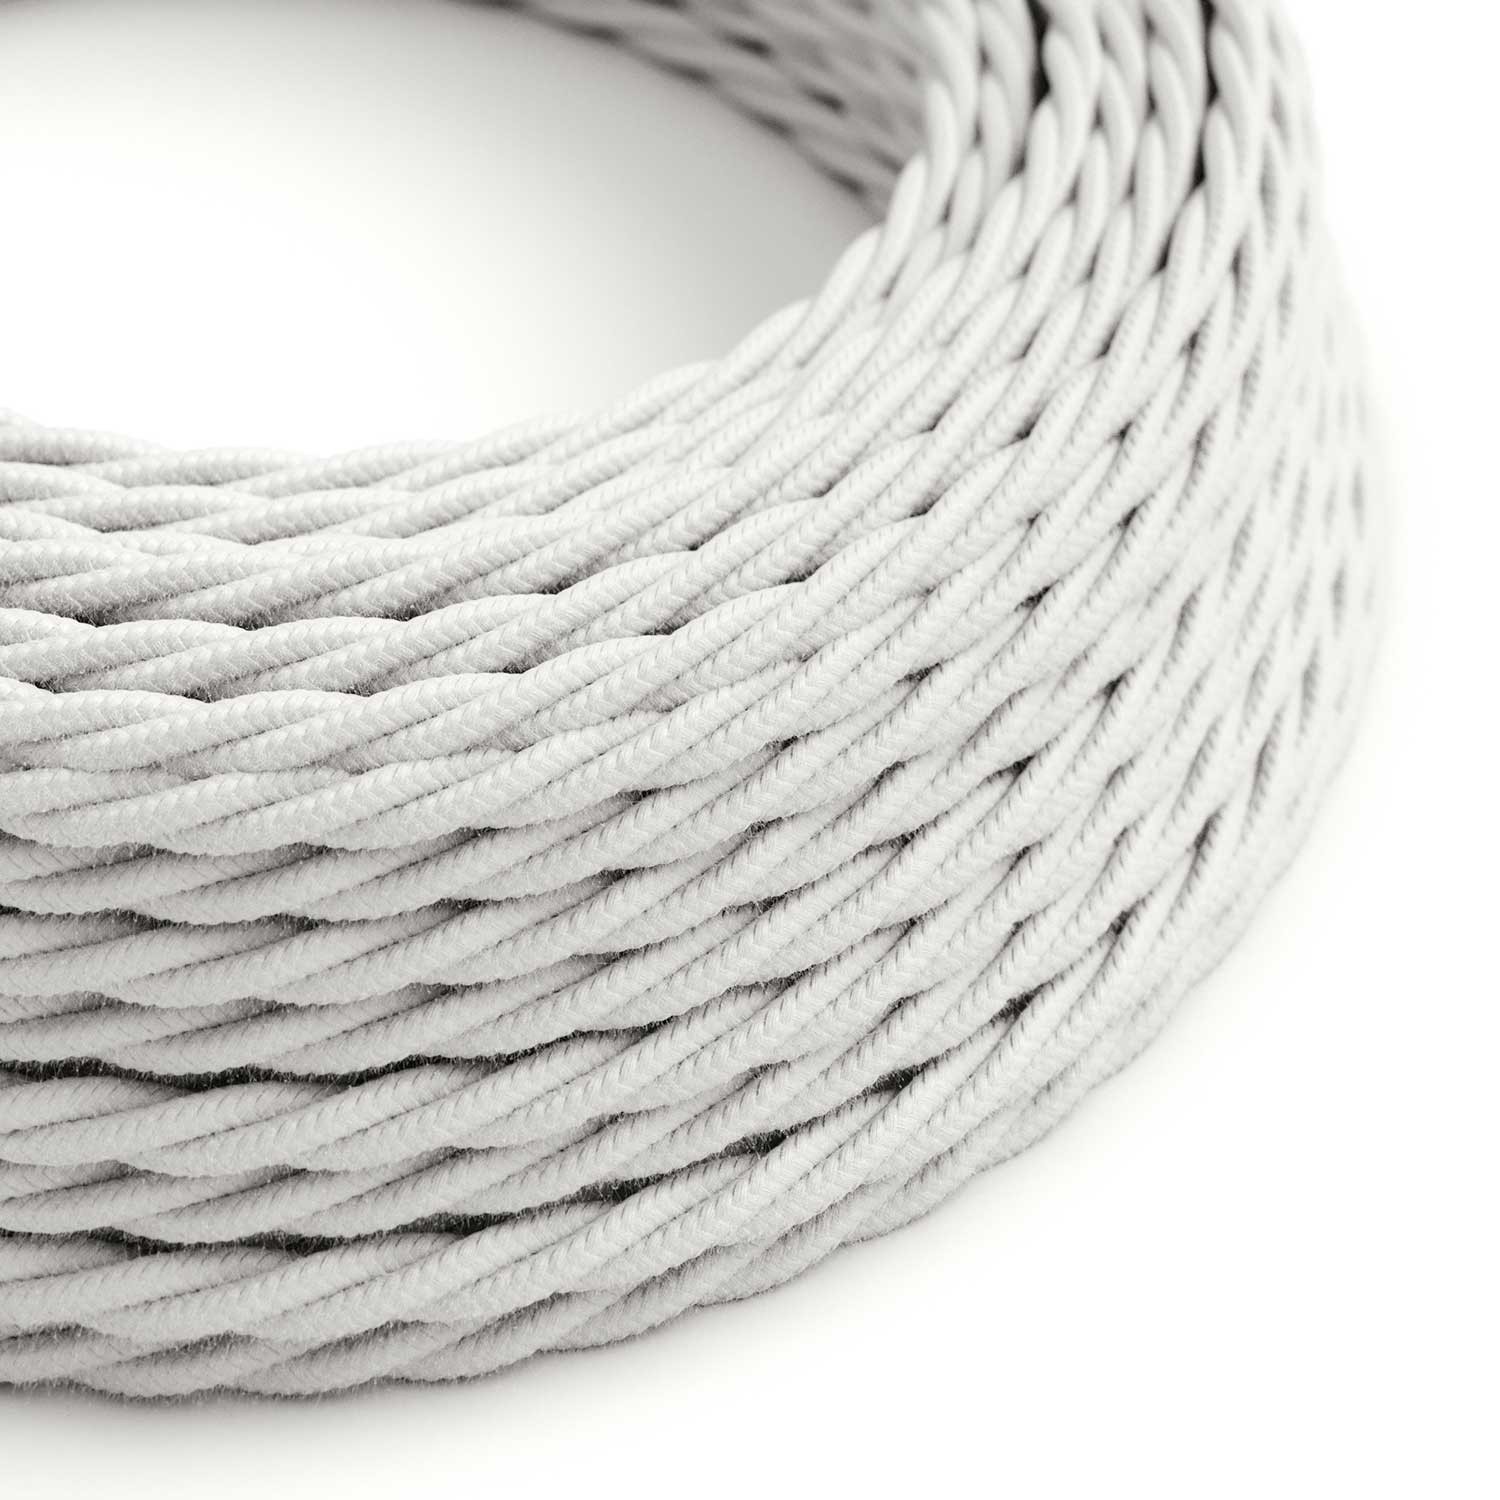 Textilkabel, lichtweiß, aus Baumwolle - Das Original von Creative-Cables - TC01 geflochten 2x0.75mm / 3x0.75mm